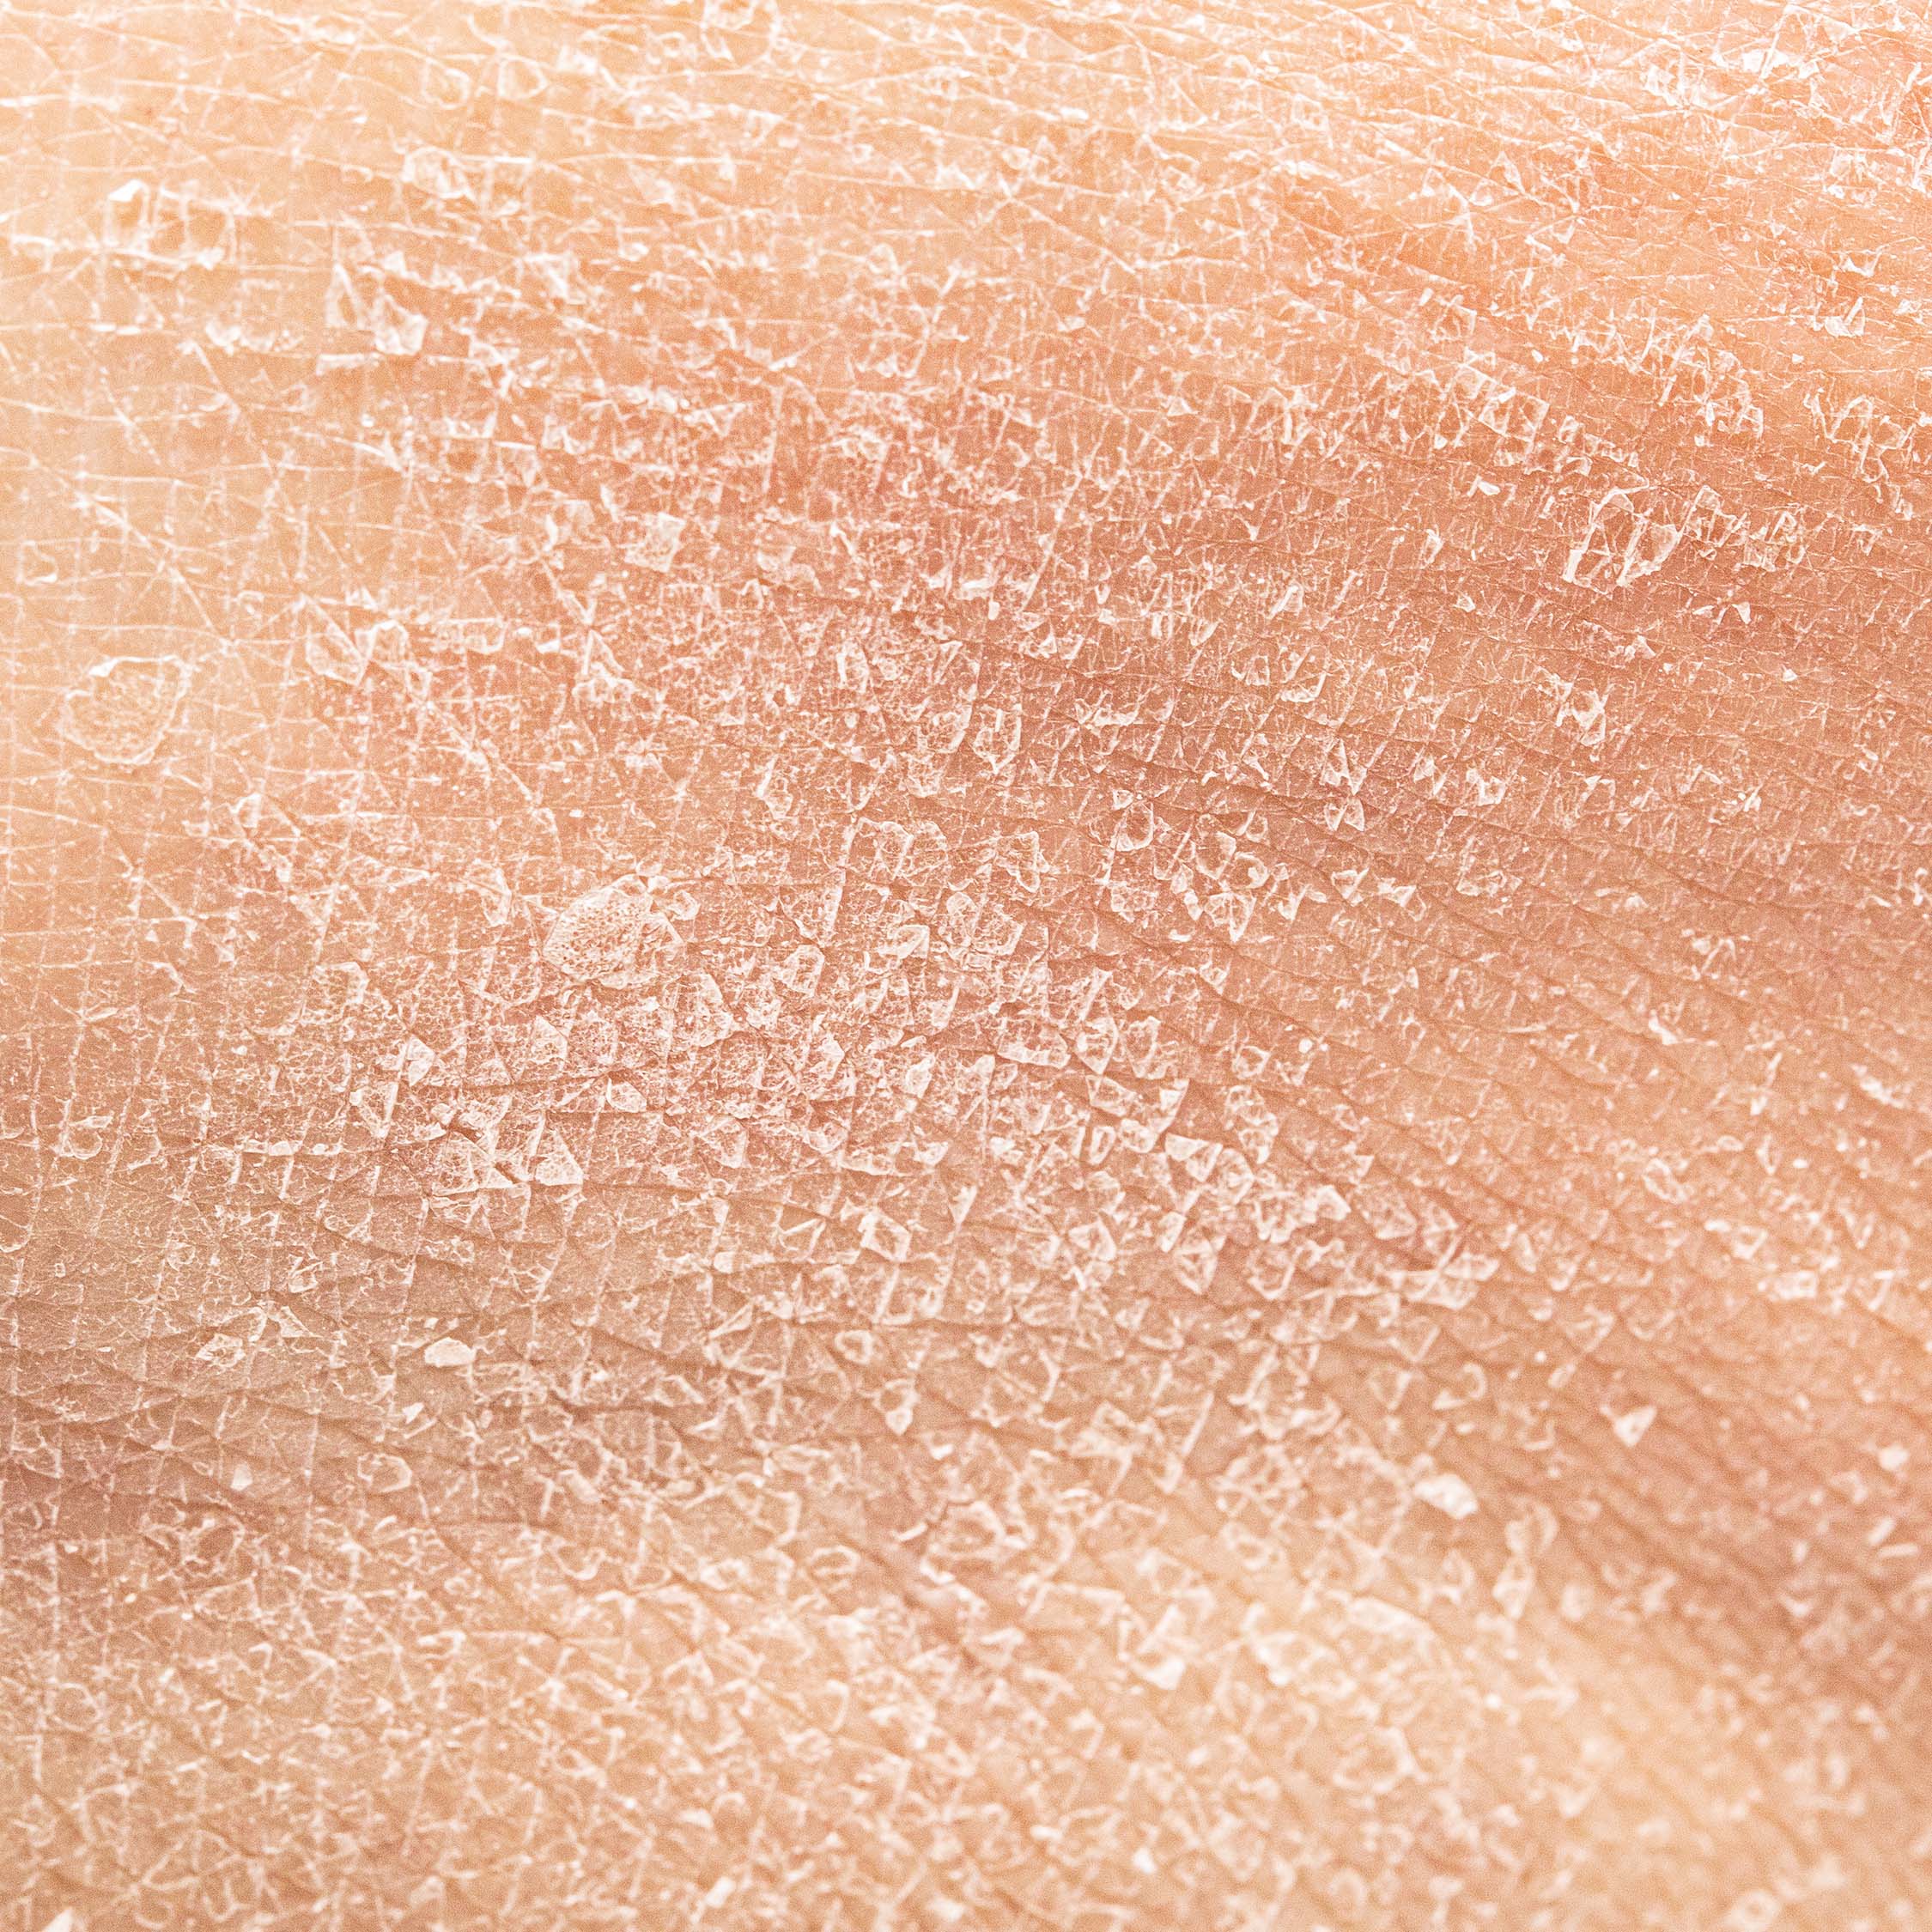 Macro shot of dry skin